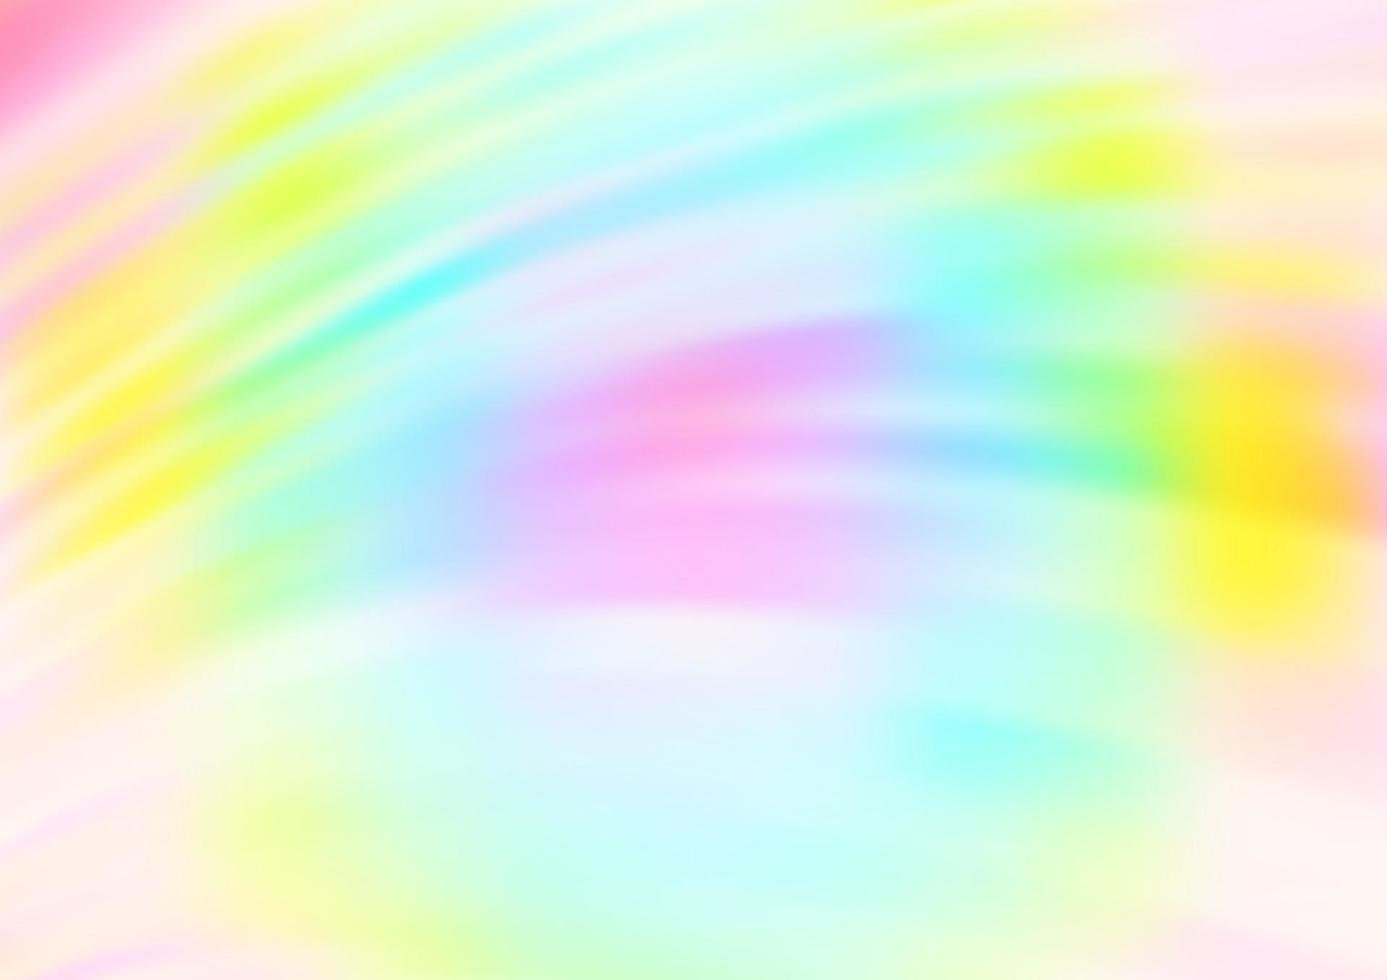 Fondo de vector de arco iris multicolor claro con formas de lámpara.